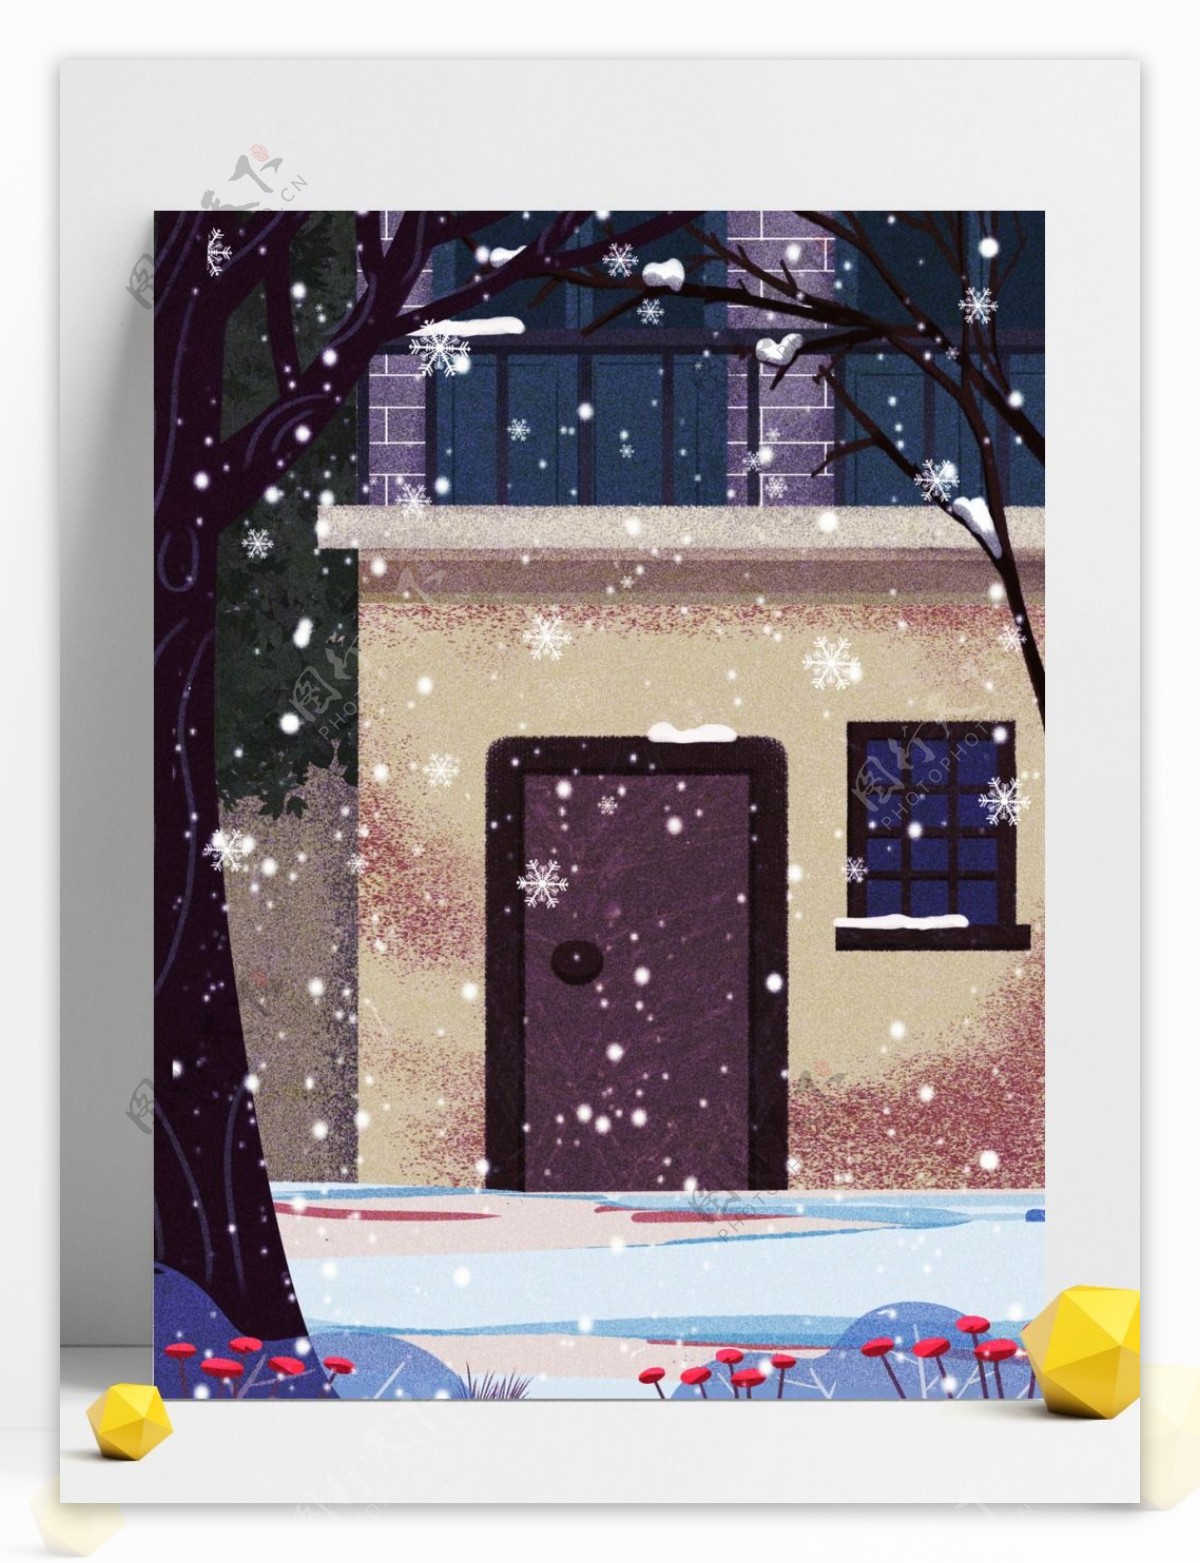 简约冬季雪地房子背景设计